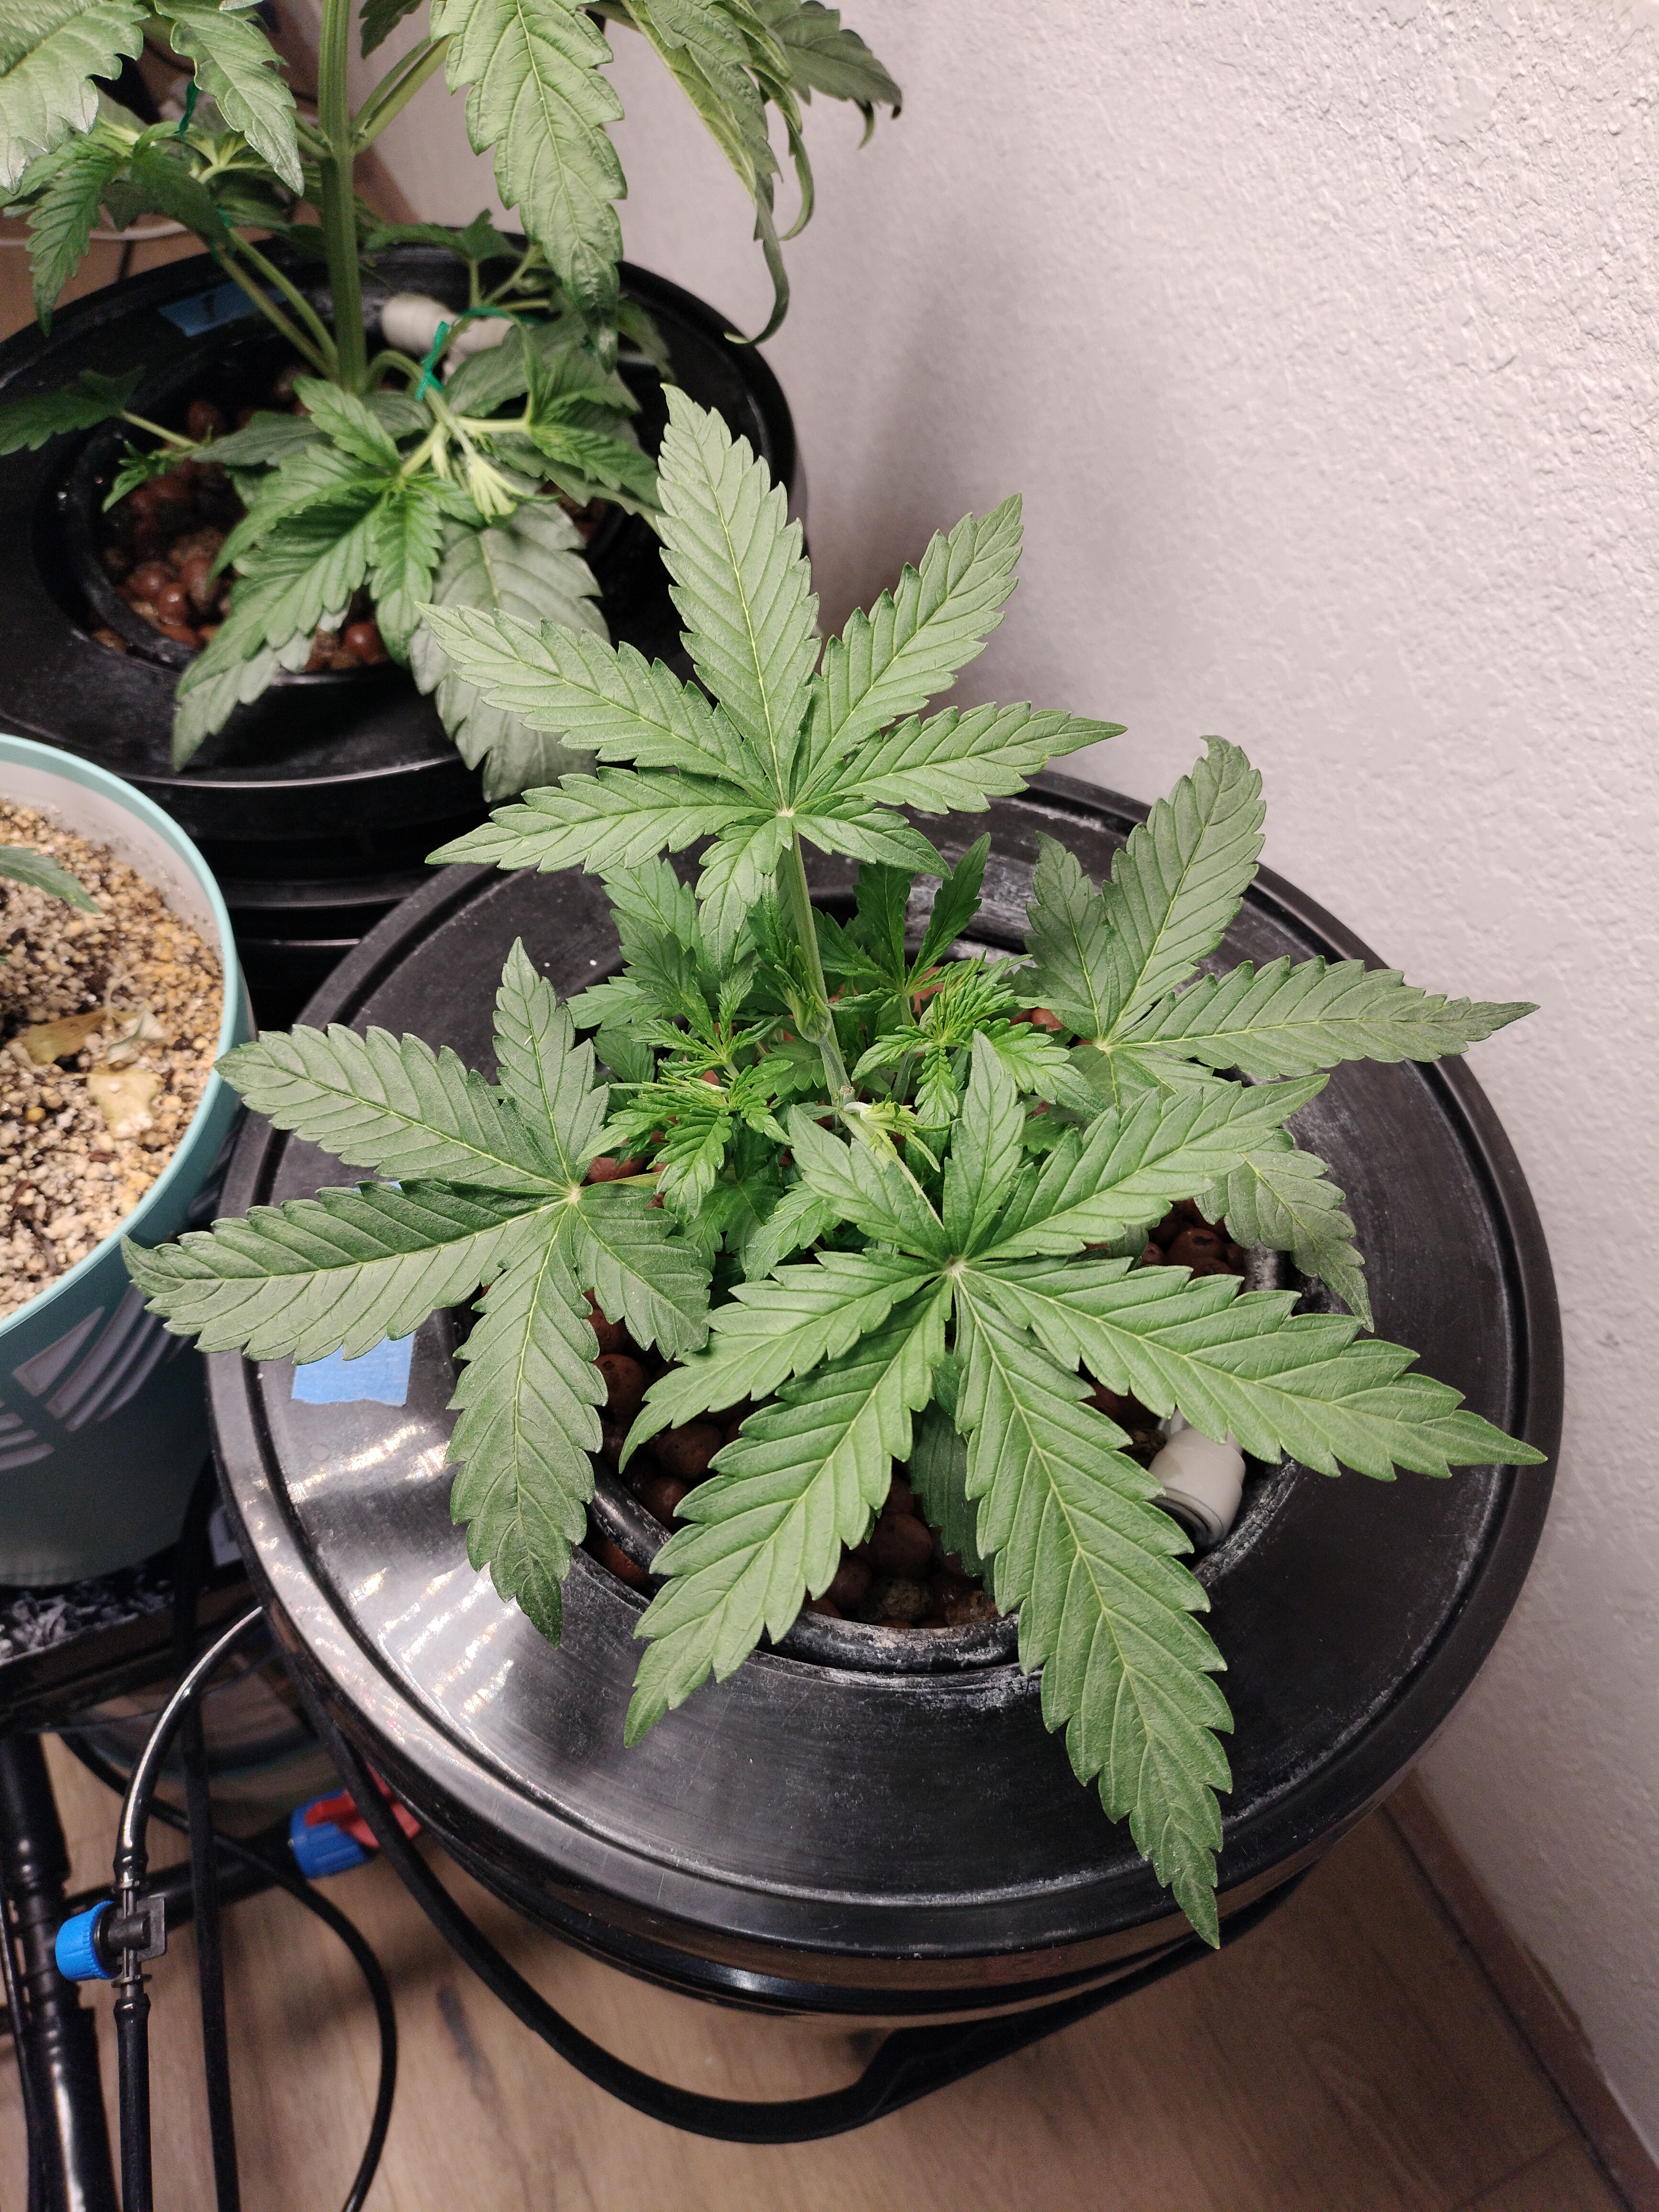 Day 28, GDP auto - Flowering Marijuana Strain